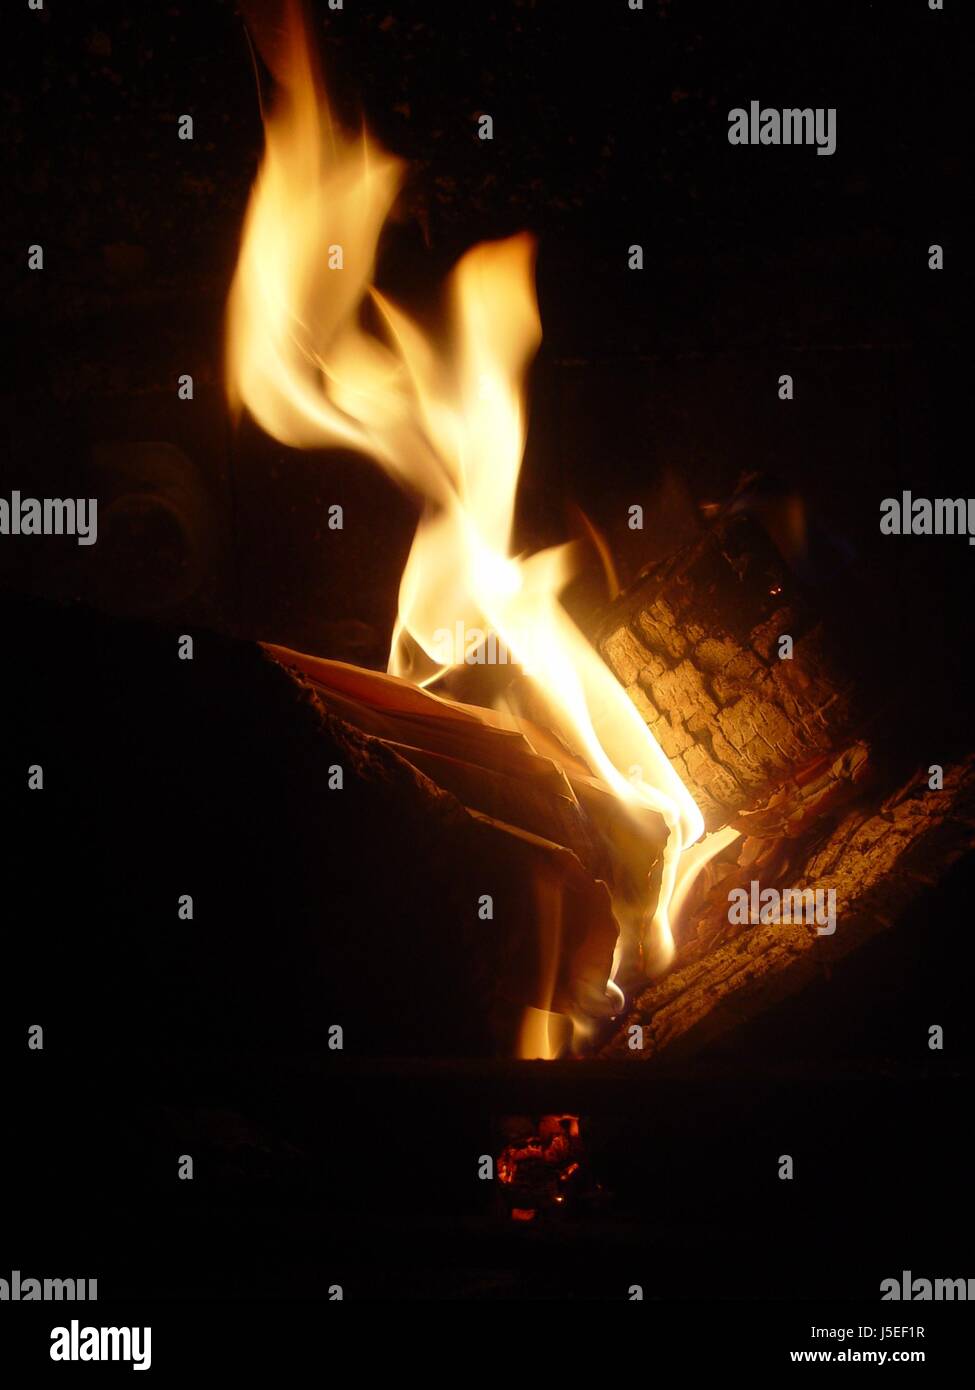 Caliente el fuego conflagración chimenea estufa hogar llama calentar el calor heiss heis Foto de stock